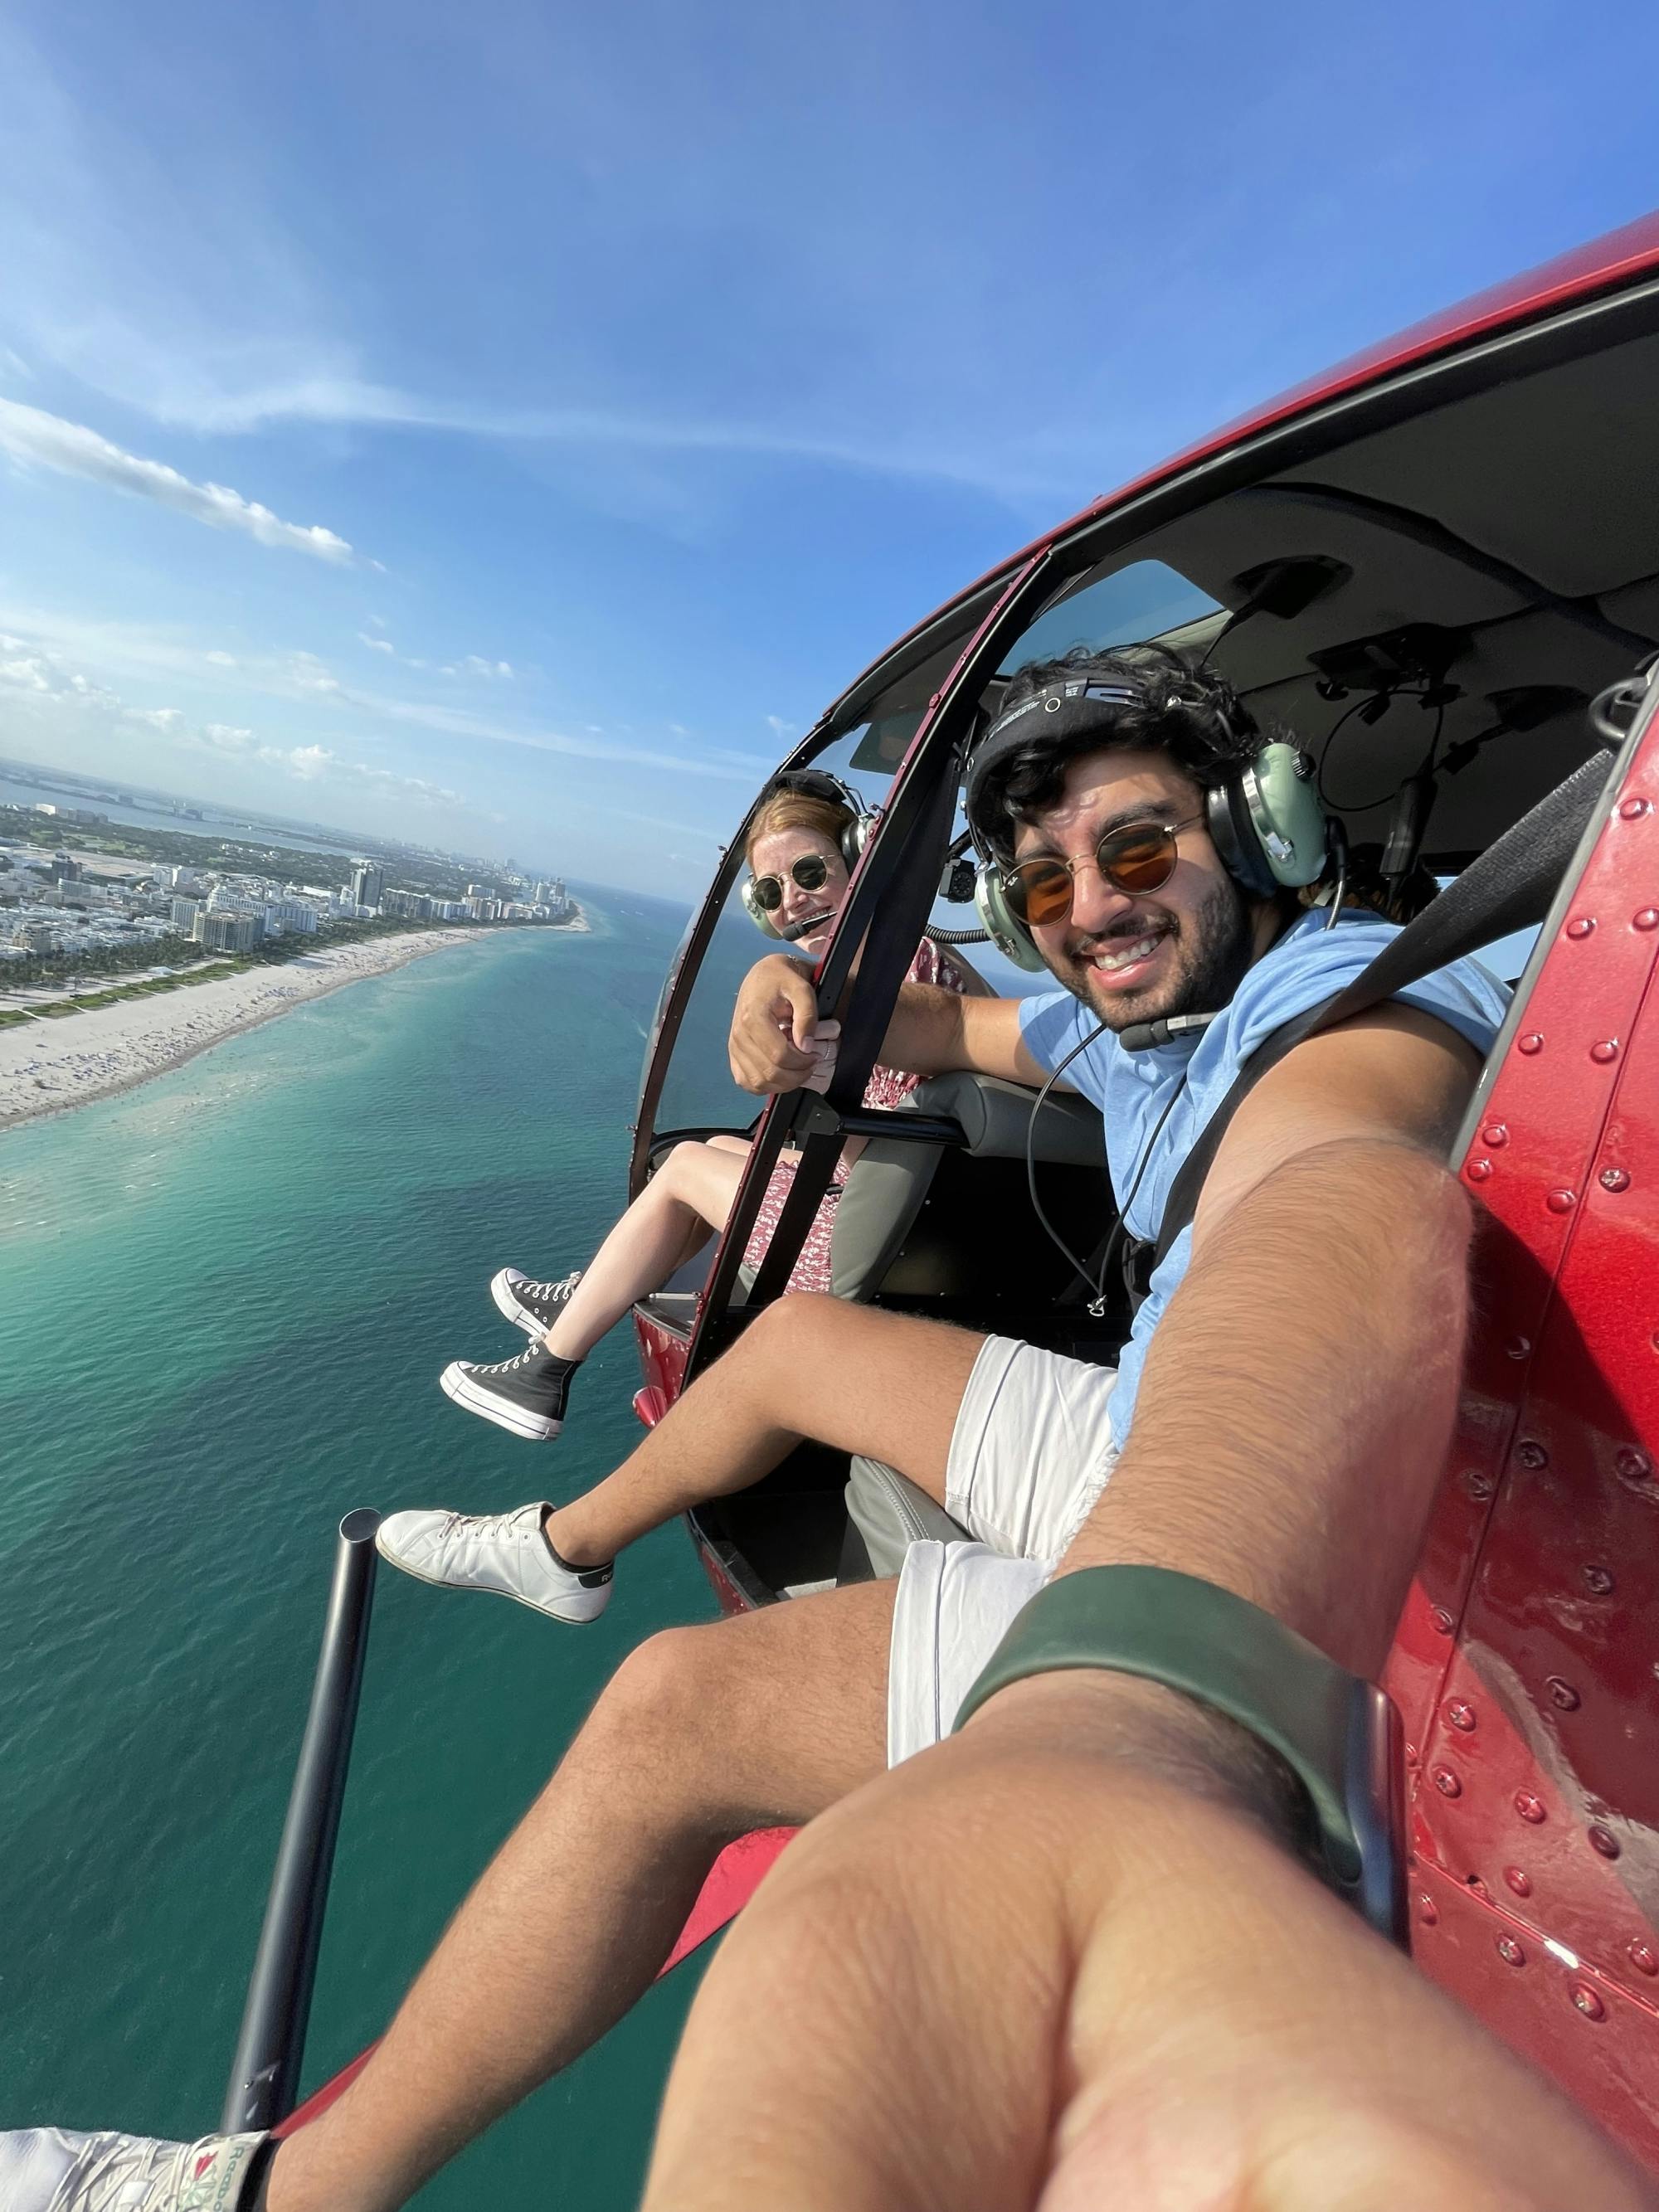 Miami Beach 35-minütiger Helikopterrundflug ab Fort Lauderdale